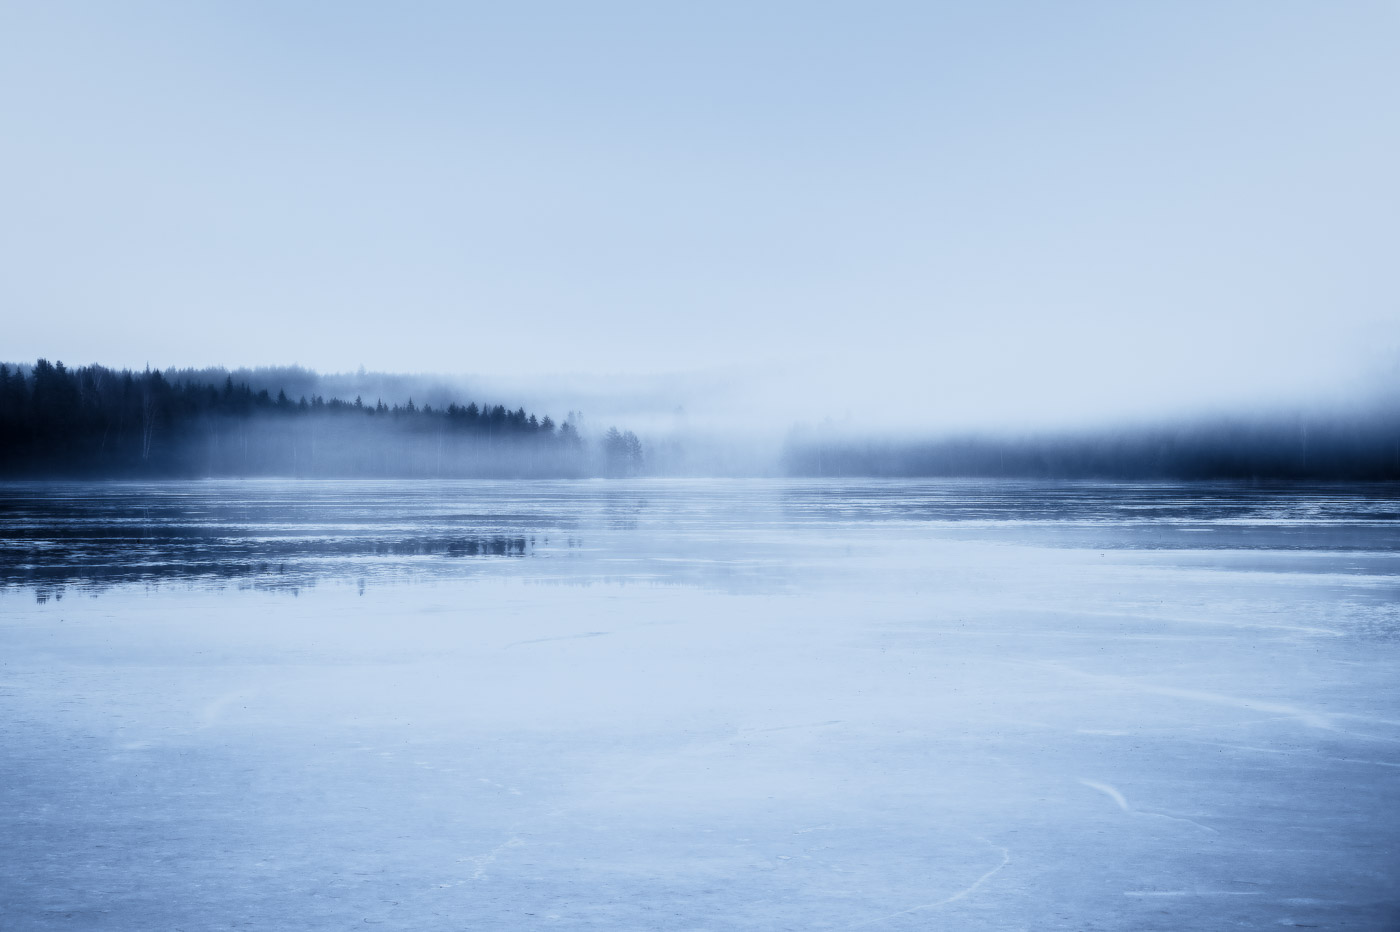 Misty lake scape blue tones